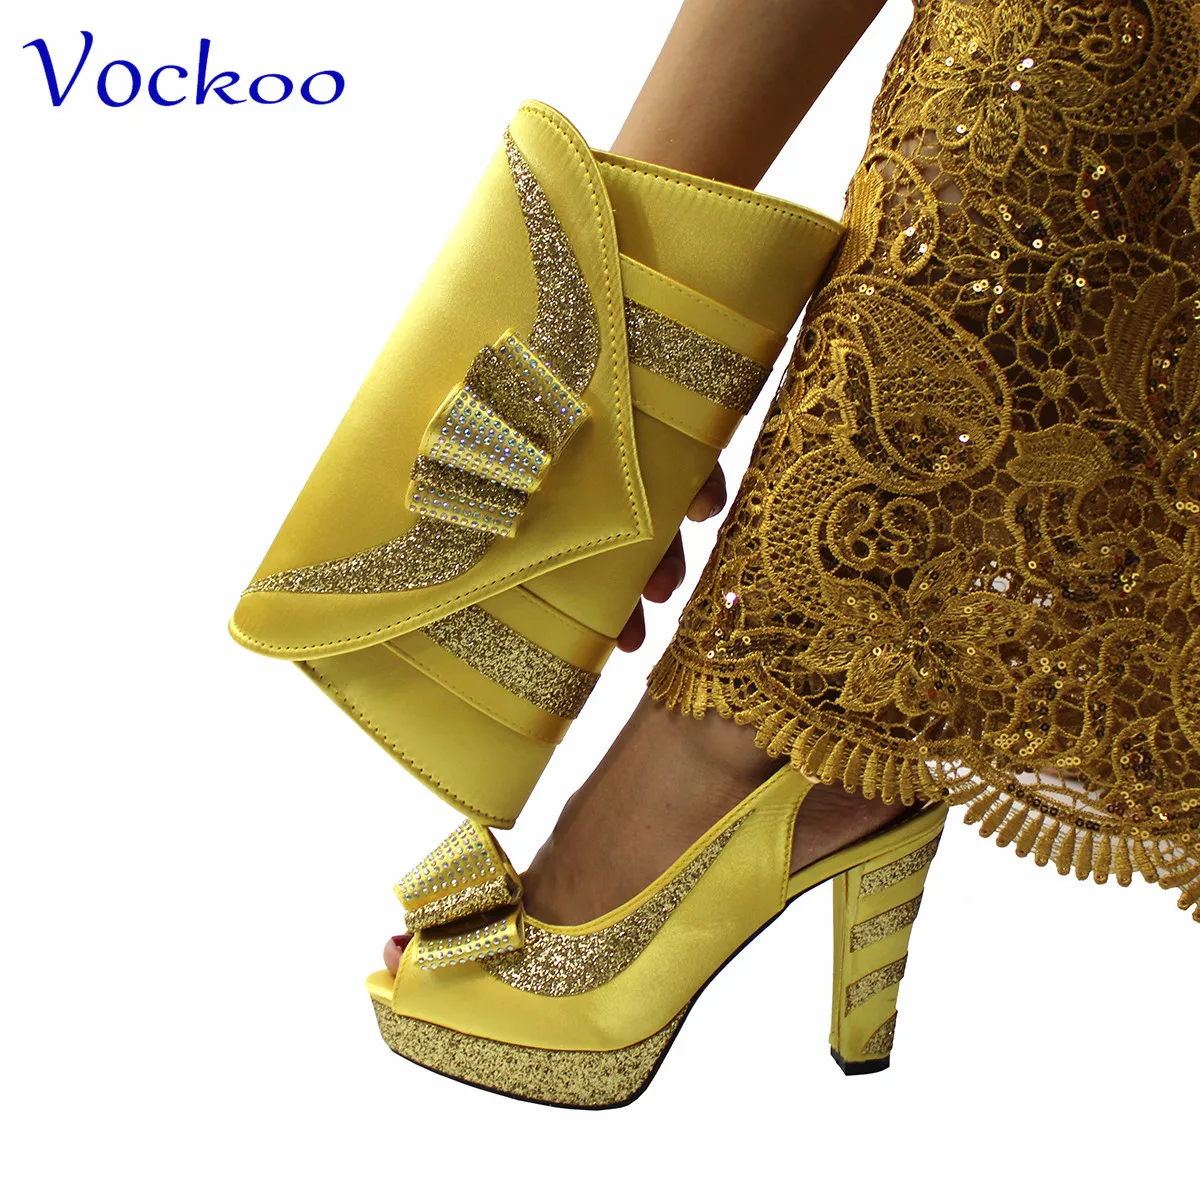 Златист цвят, нови обувки в африканския стил, комплект чанти в тон, голяма чанта с цветя за сватба